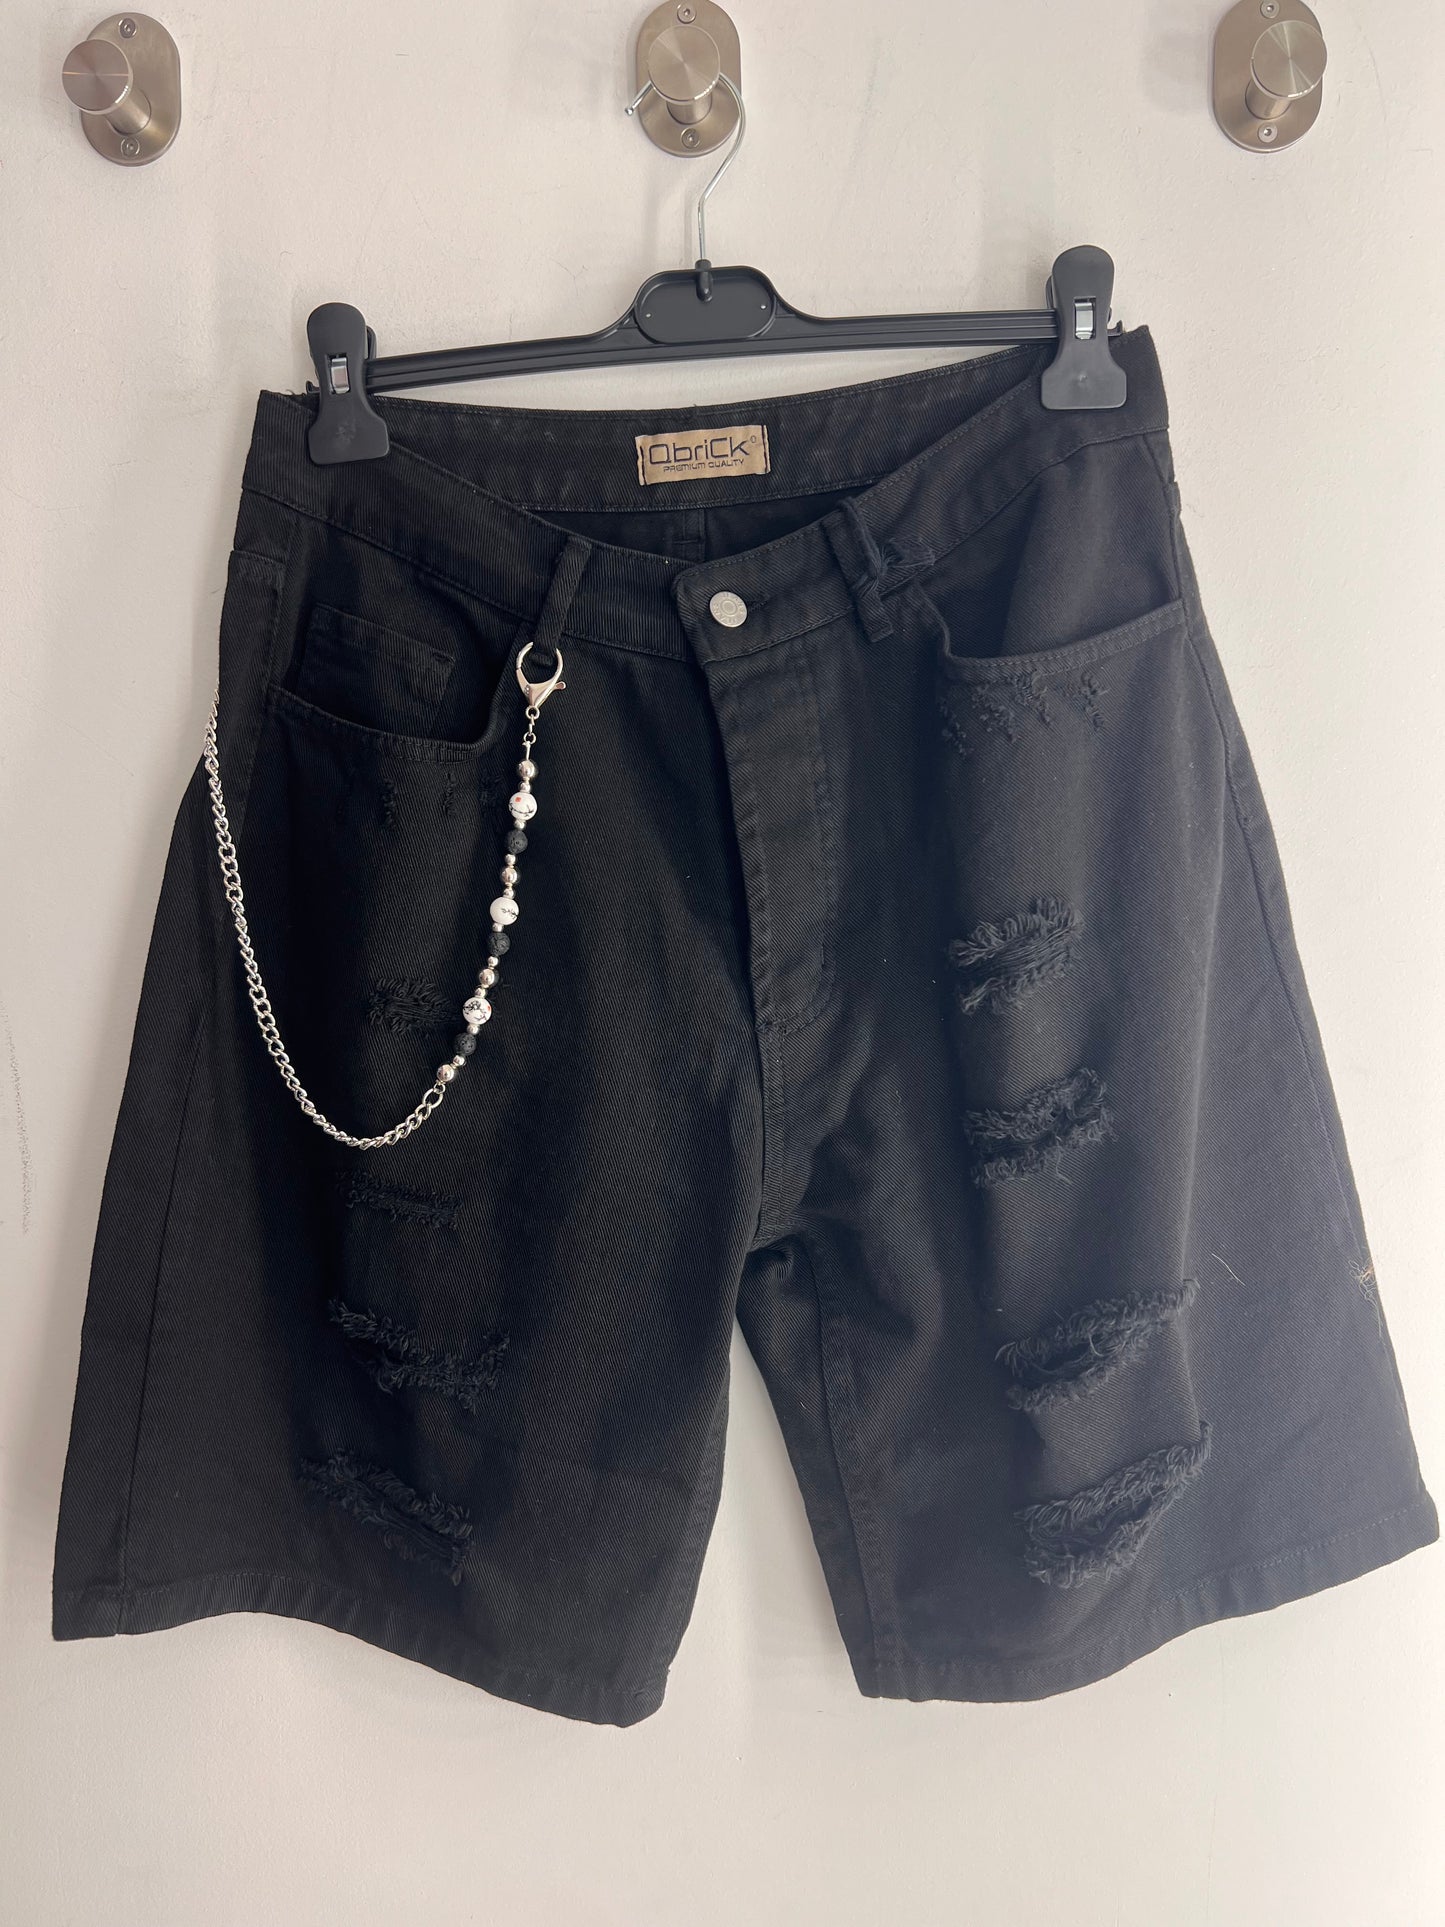 jeans corto skinny nero strappato con catena